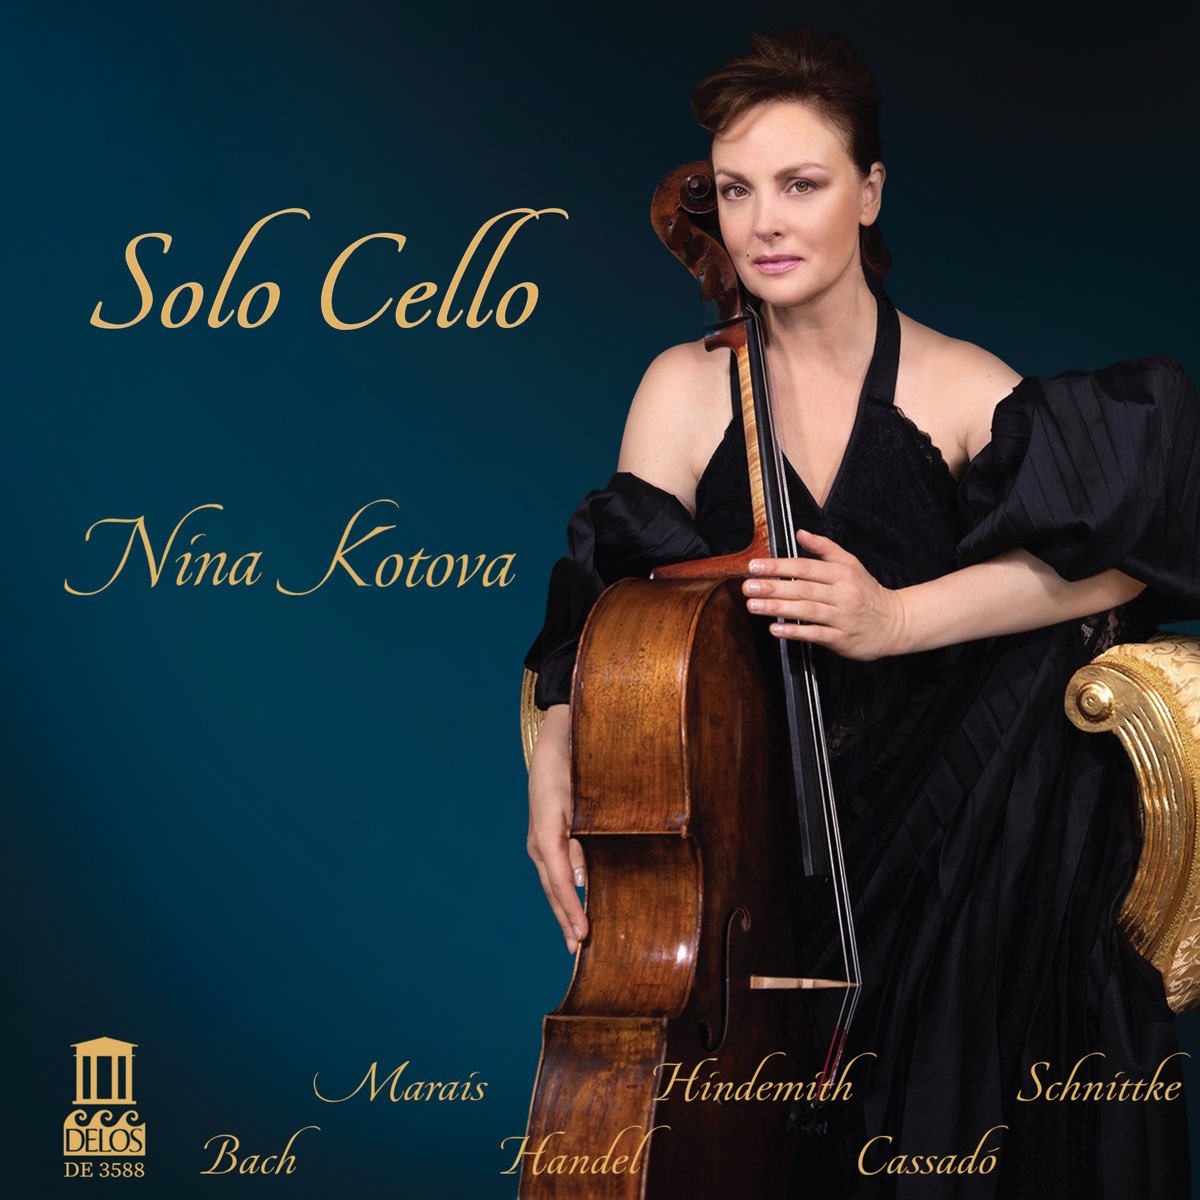 Solo Cello par Nina Kotova sur Apple Music